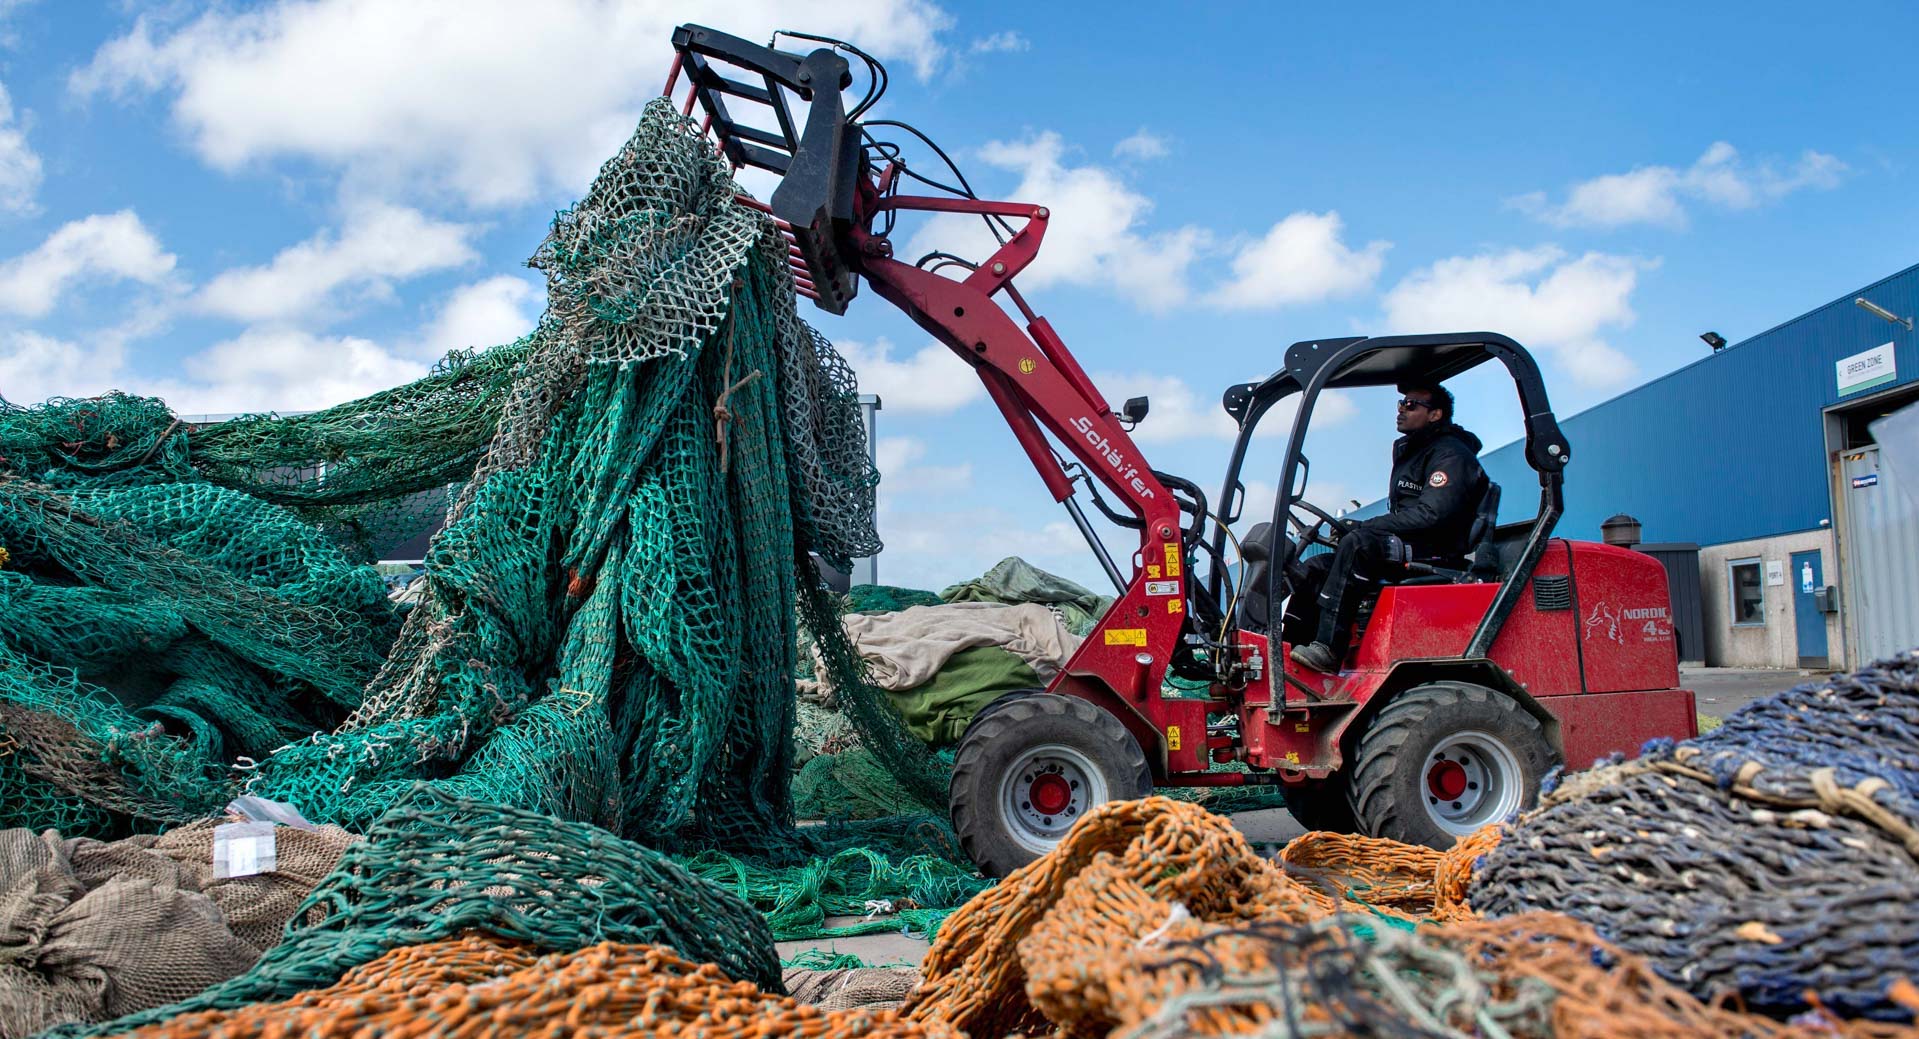 BMW trouve de nouvelles façons d’utiliser le plastique recyclé à partir d’anciens filets de pêche avec un processus exclusif